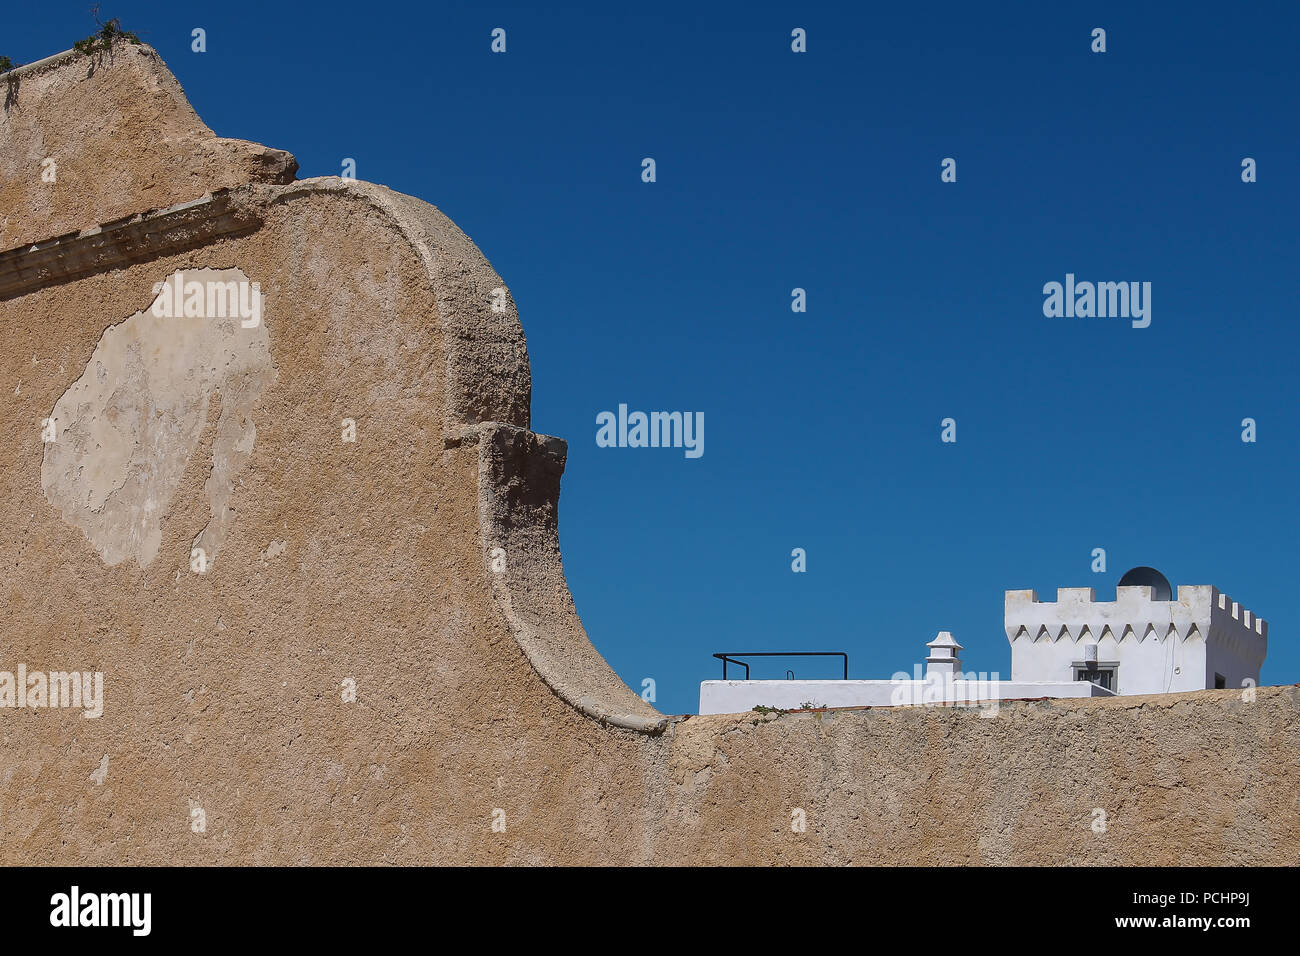 Détail de l'architecture portugaise traditionnelle dans formere forteresse portugaise à El Jadida, Maroc. Ciel bleu. Banque D'Images